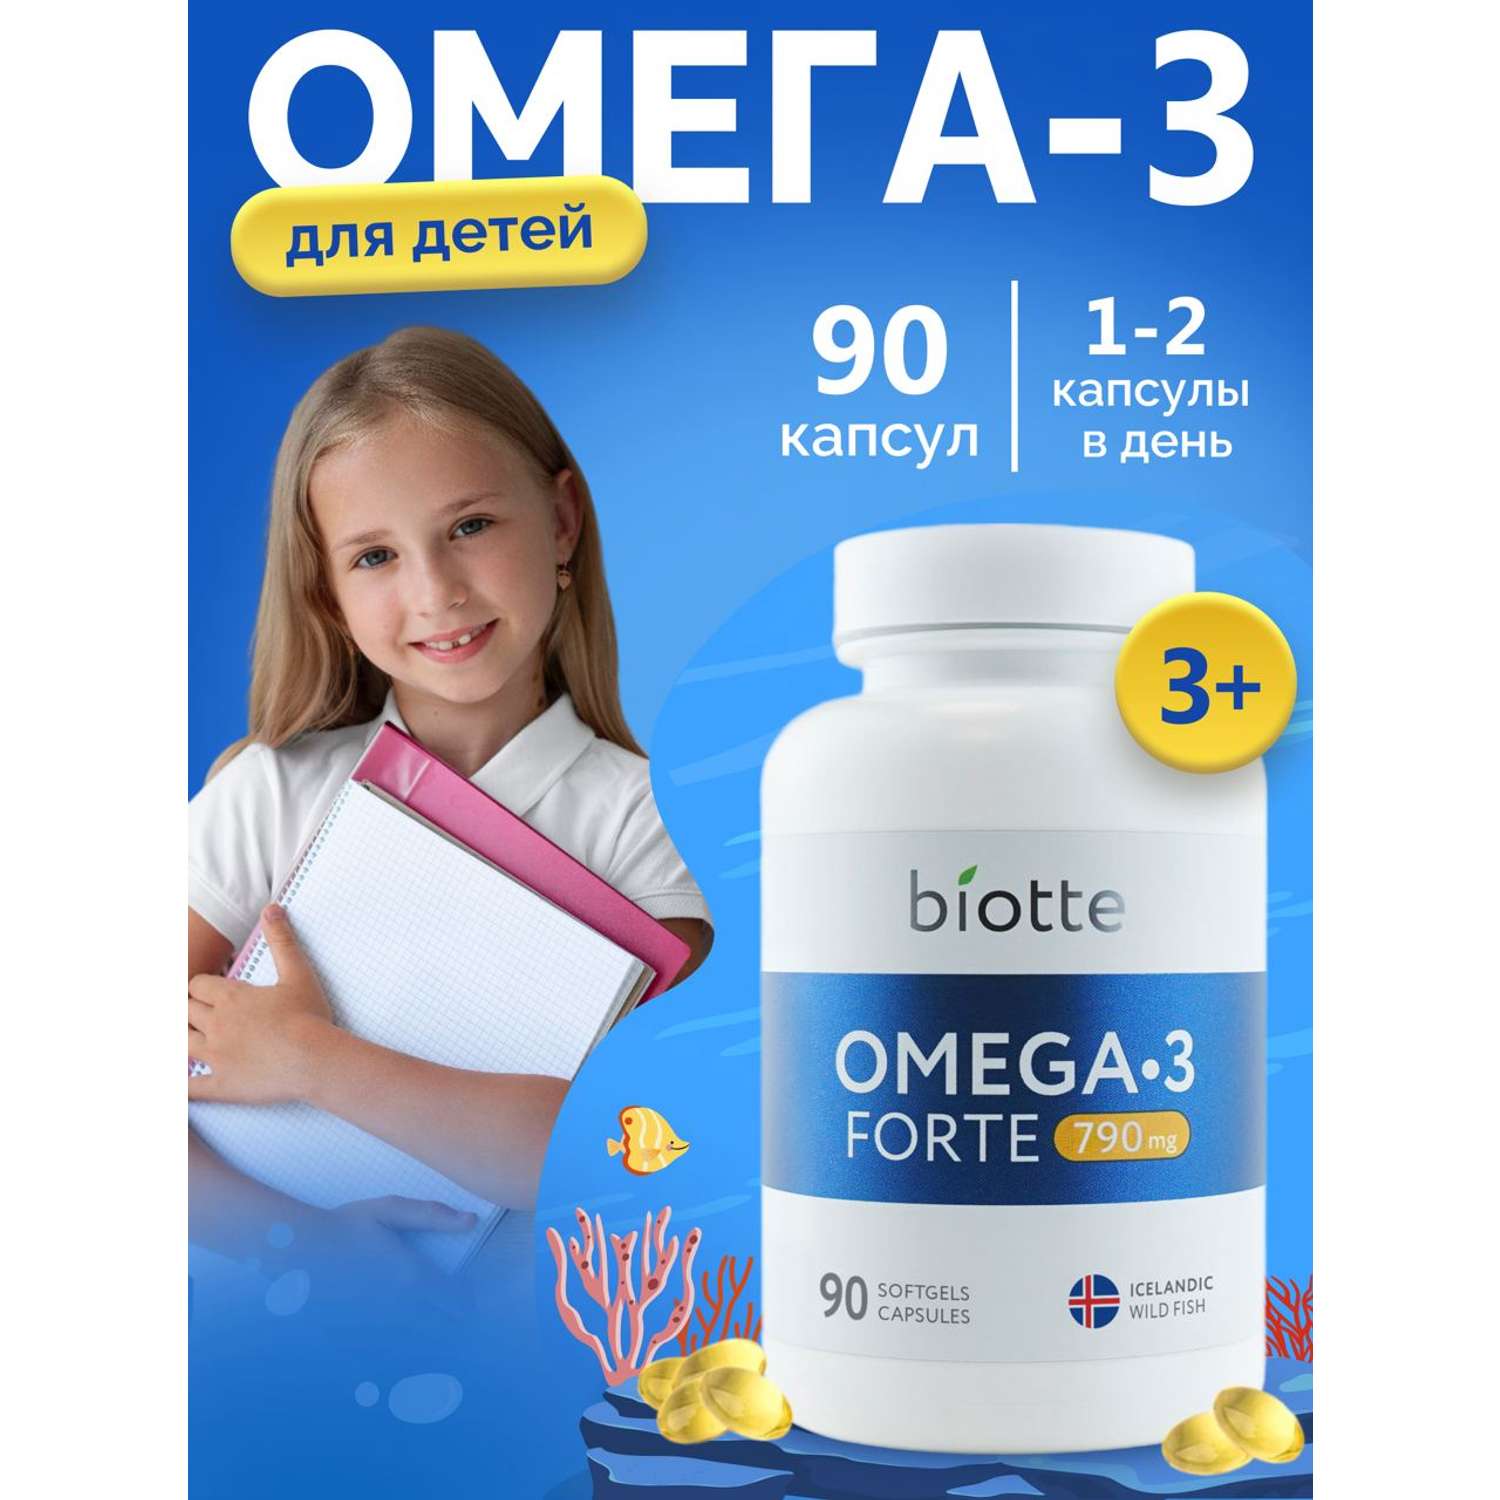 Омега-3 форте BIOTTE 790 mg fish oil премиум рыбий жир для детей подростков взрослых 90 капсул - фото 1